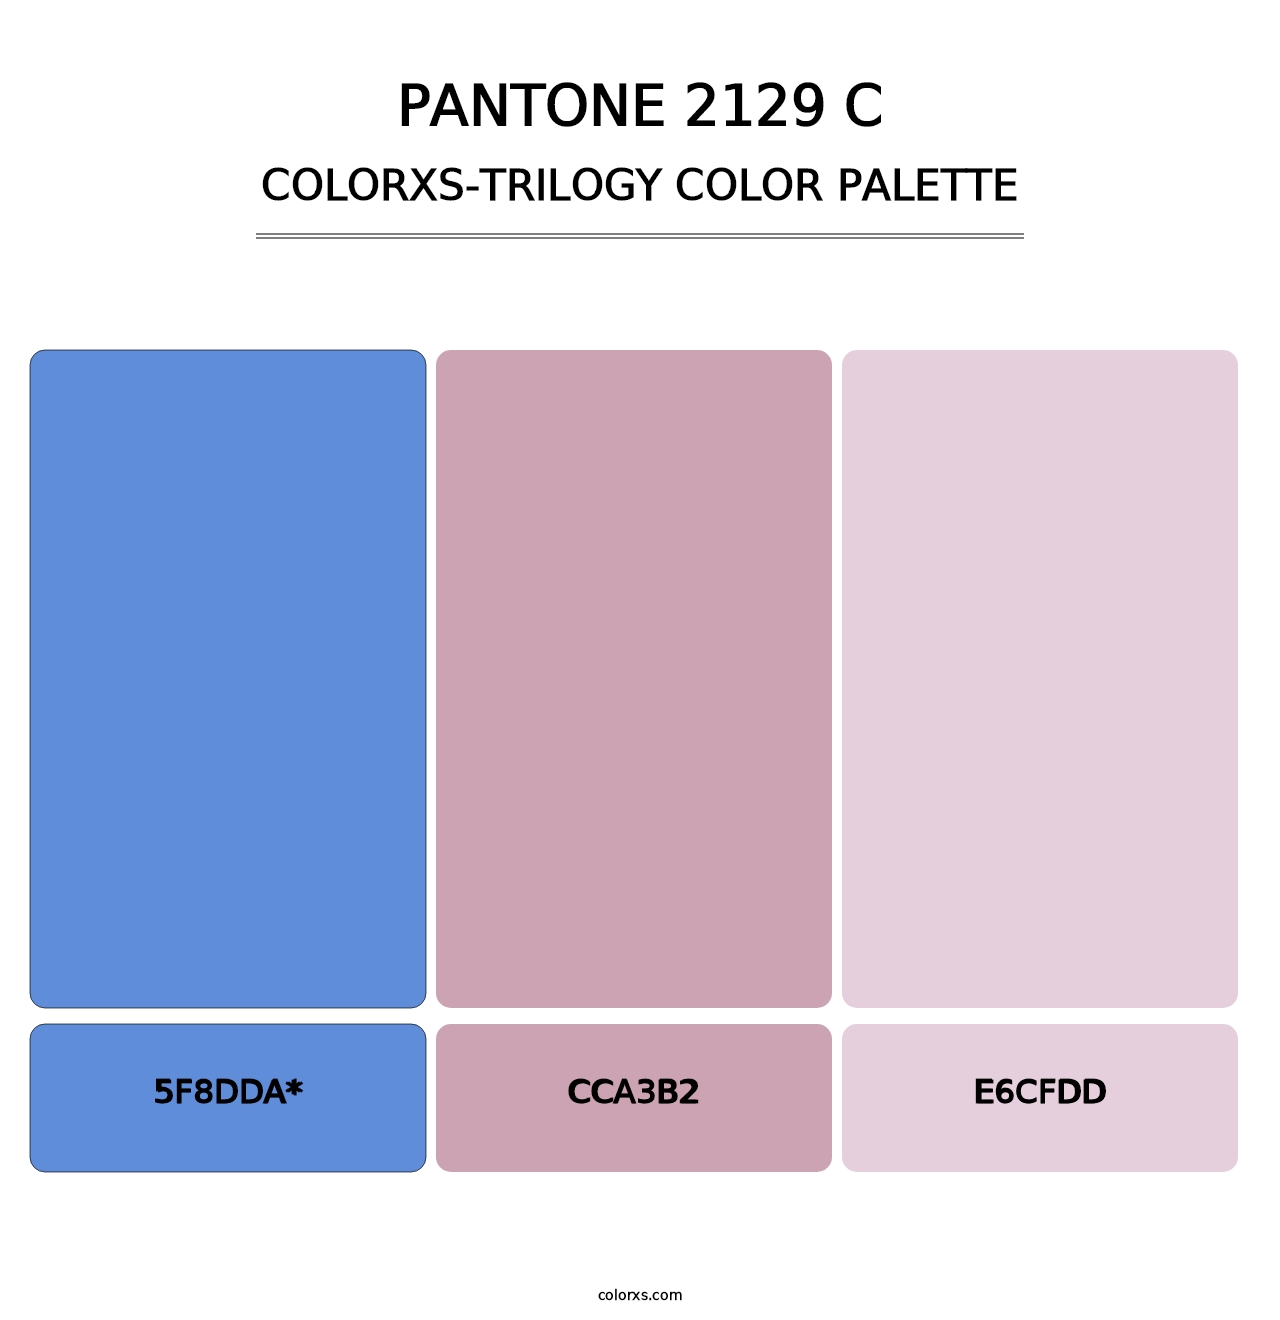 PANTONE 2129 C - Colorxs Trilogy Palette